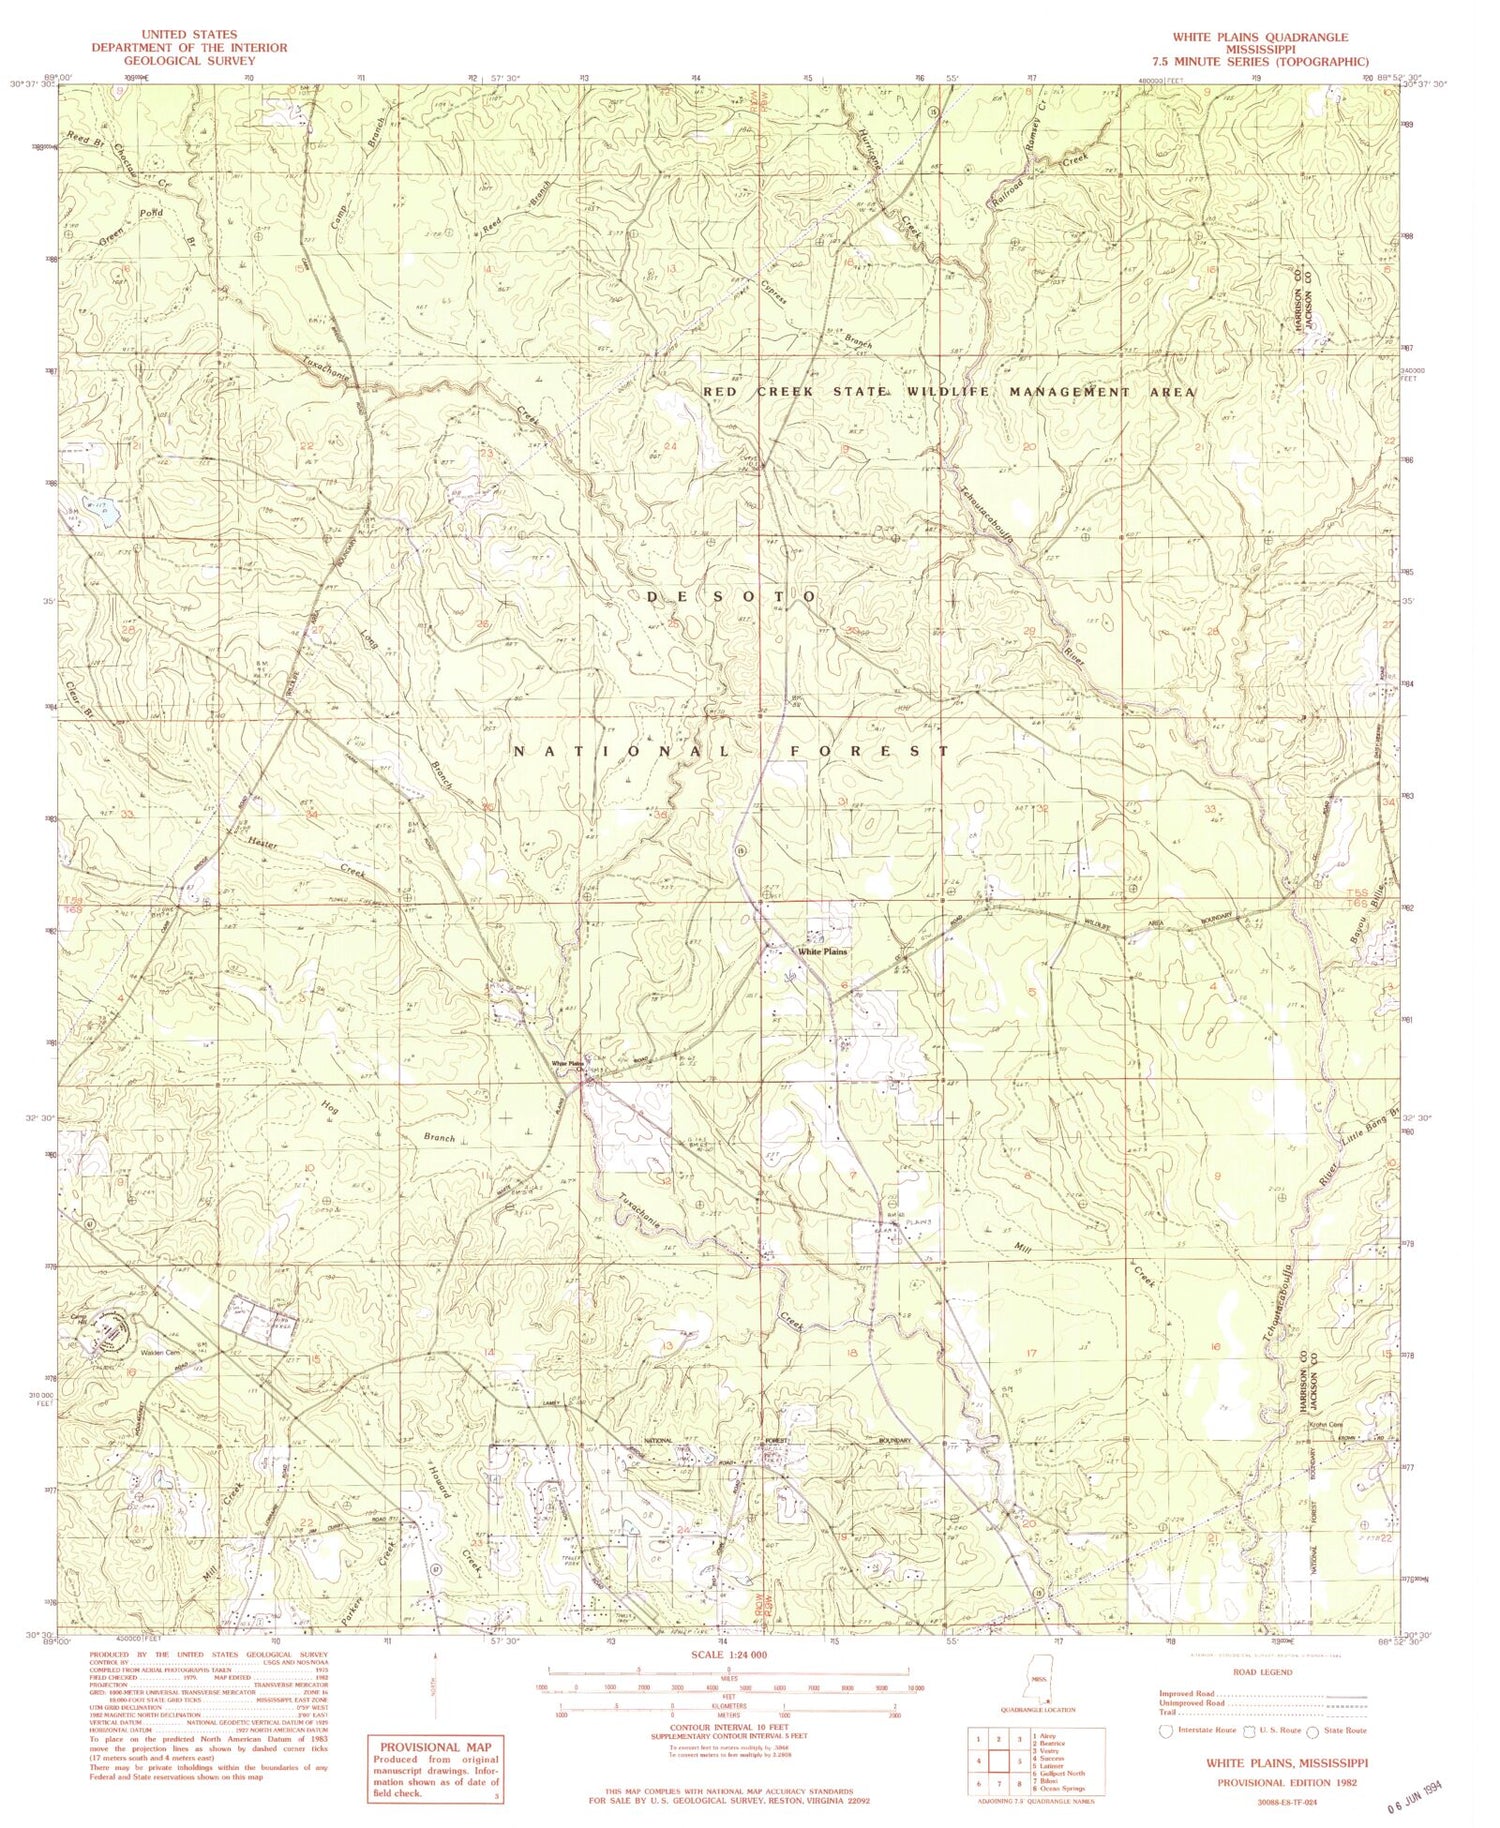 Classic USGS White Plains Mississippi 7.5'x7.5' Topo Map Image